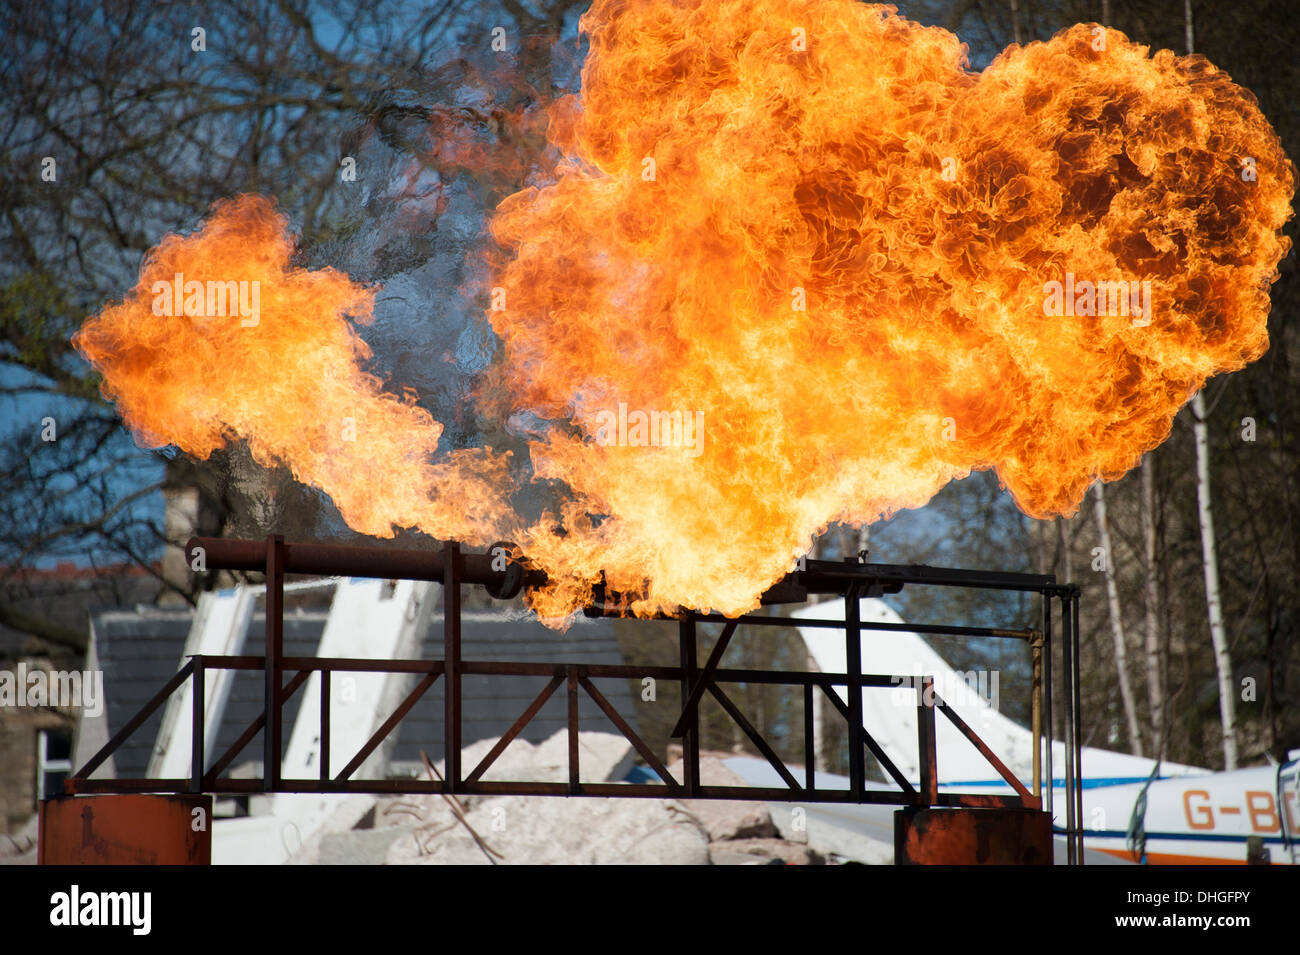 Gasoducto de la brida de la válvula de gas de simulación de incendios Foto de stock